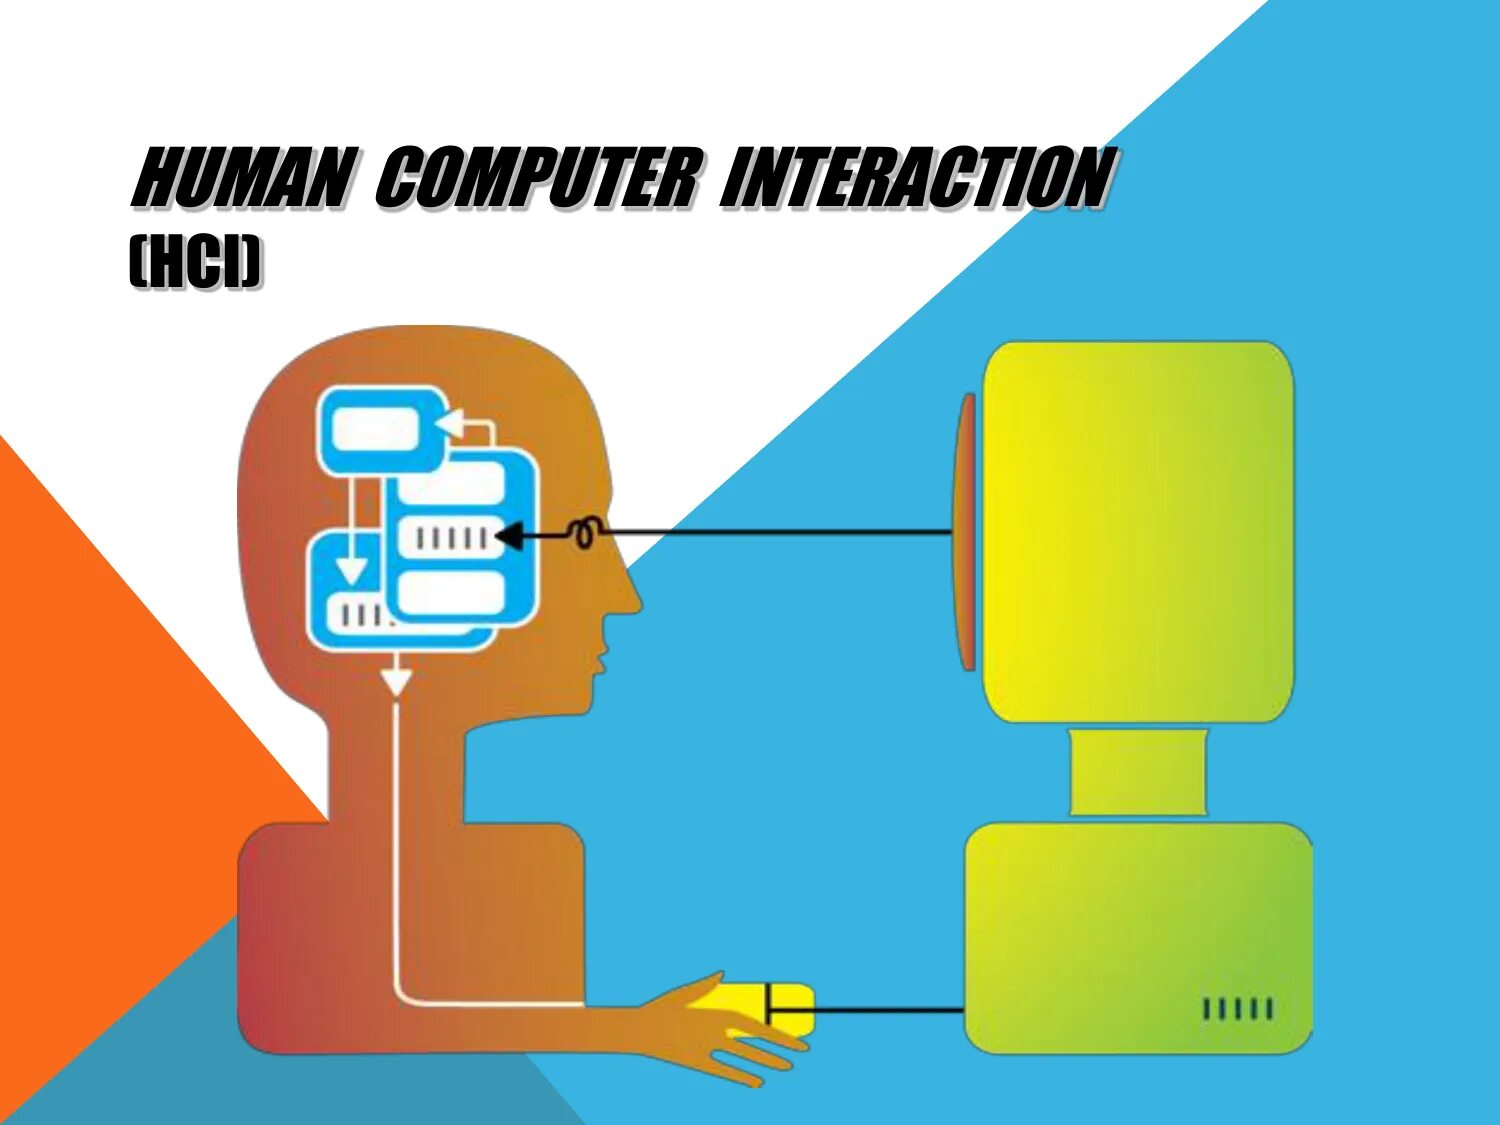 Human Computer interaction. Human Computer interface. HCI. Web Systems and Human-Computer interaction. Human interaction